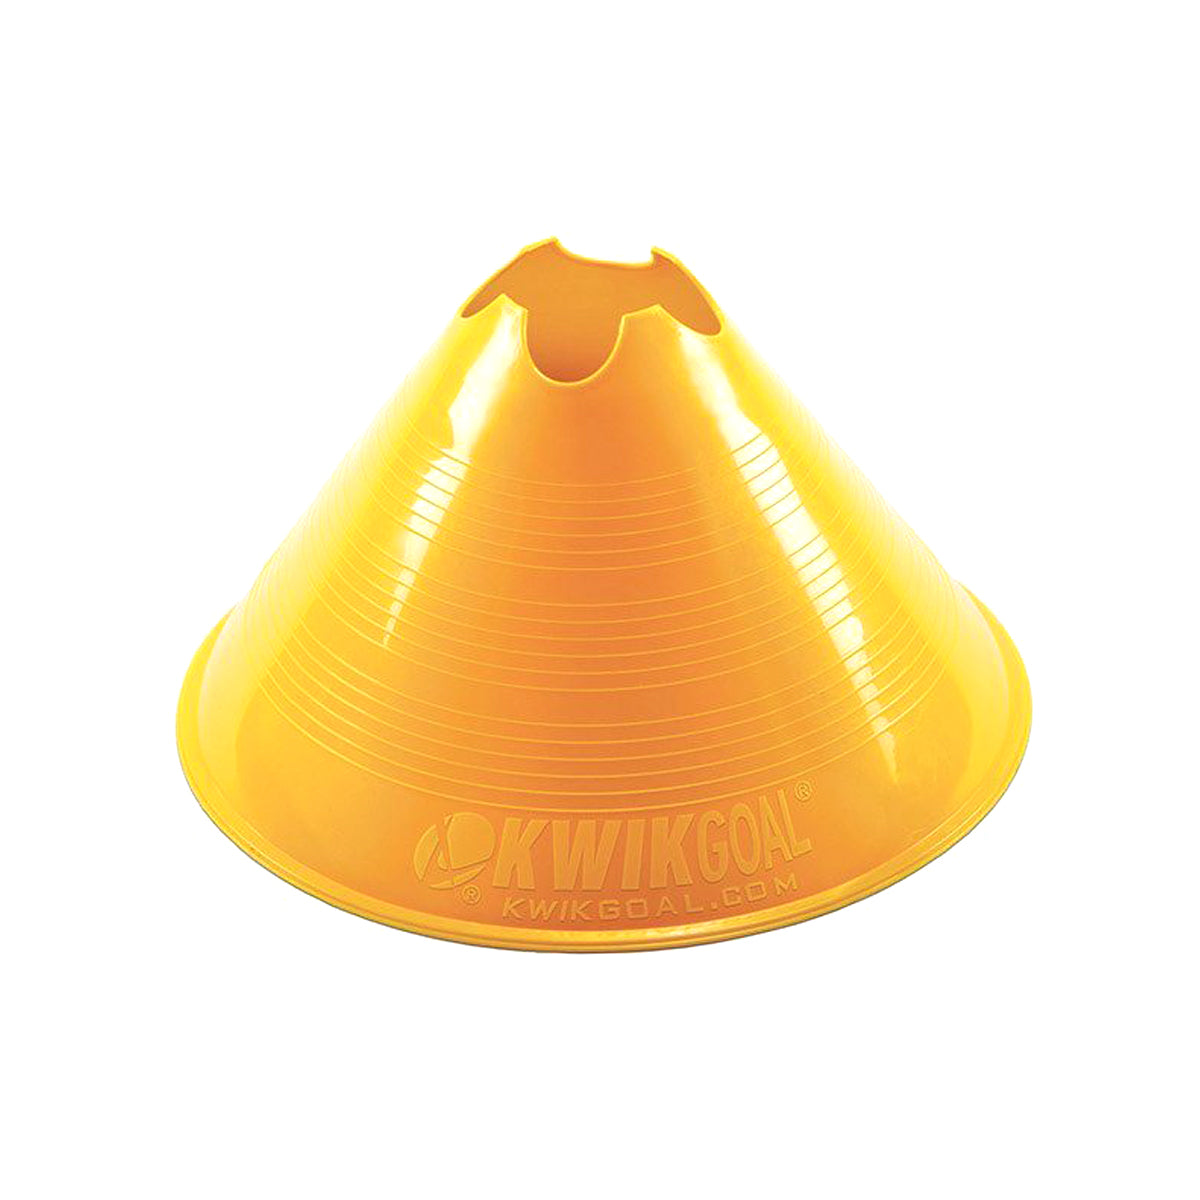 Kwikgoal Jumbo Disc Cones | 6A13 Field equipment Kwikgoal Yellow 